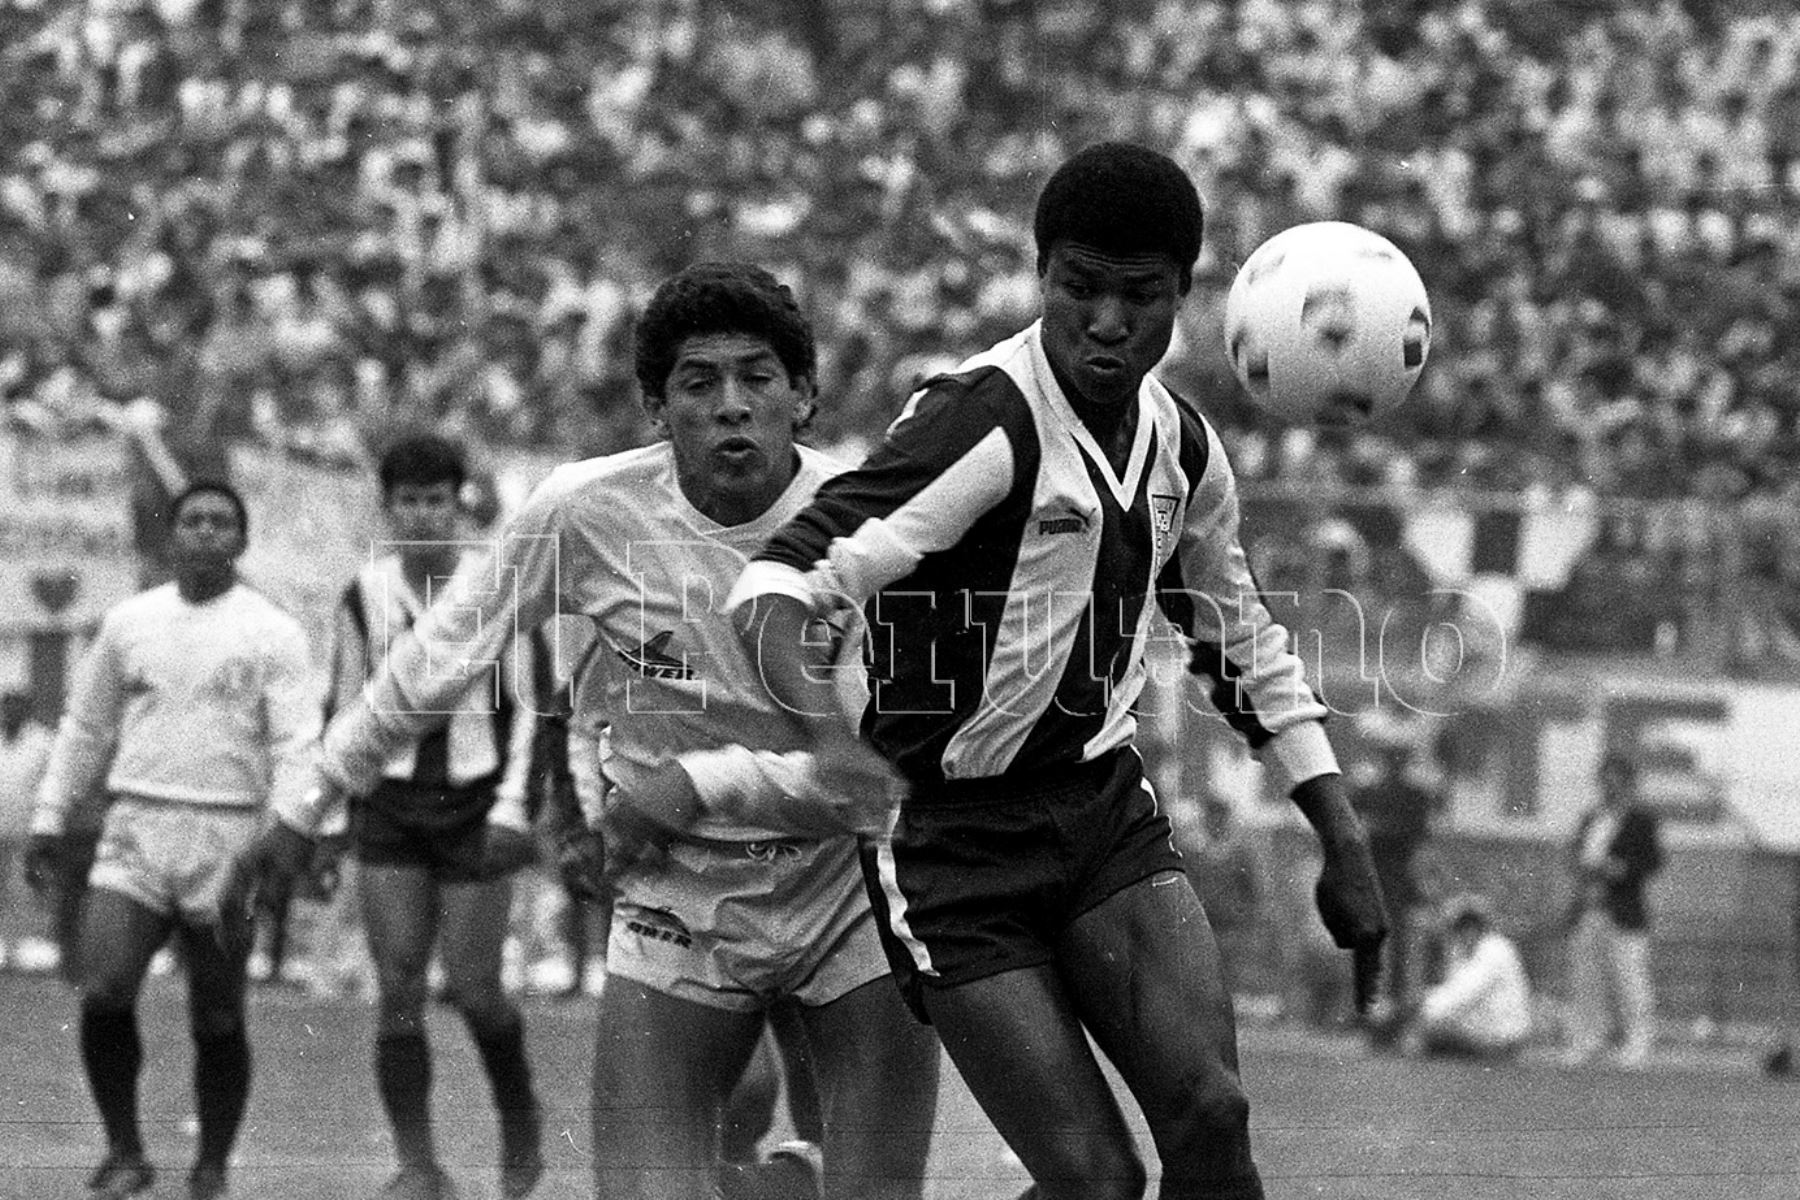 Lima - 1 noviembre 1987 / El delantero aliancista Luis Escobar supera a sus marcadores durante el encuentro entre Alianza Lima y Universitario. El cuadro aliancista ganó el clásico 1-0 con gol del "Potrillo".